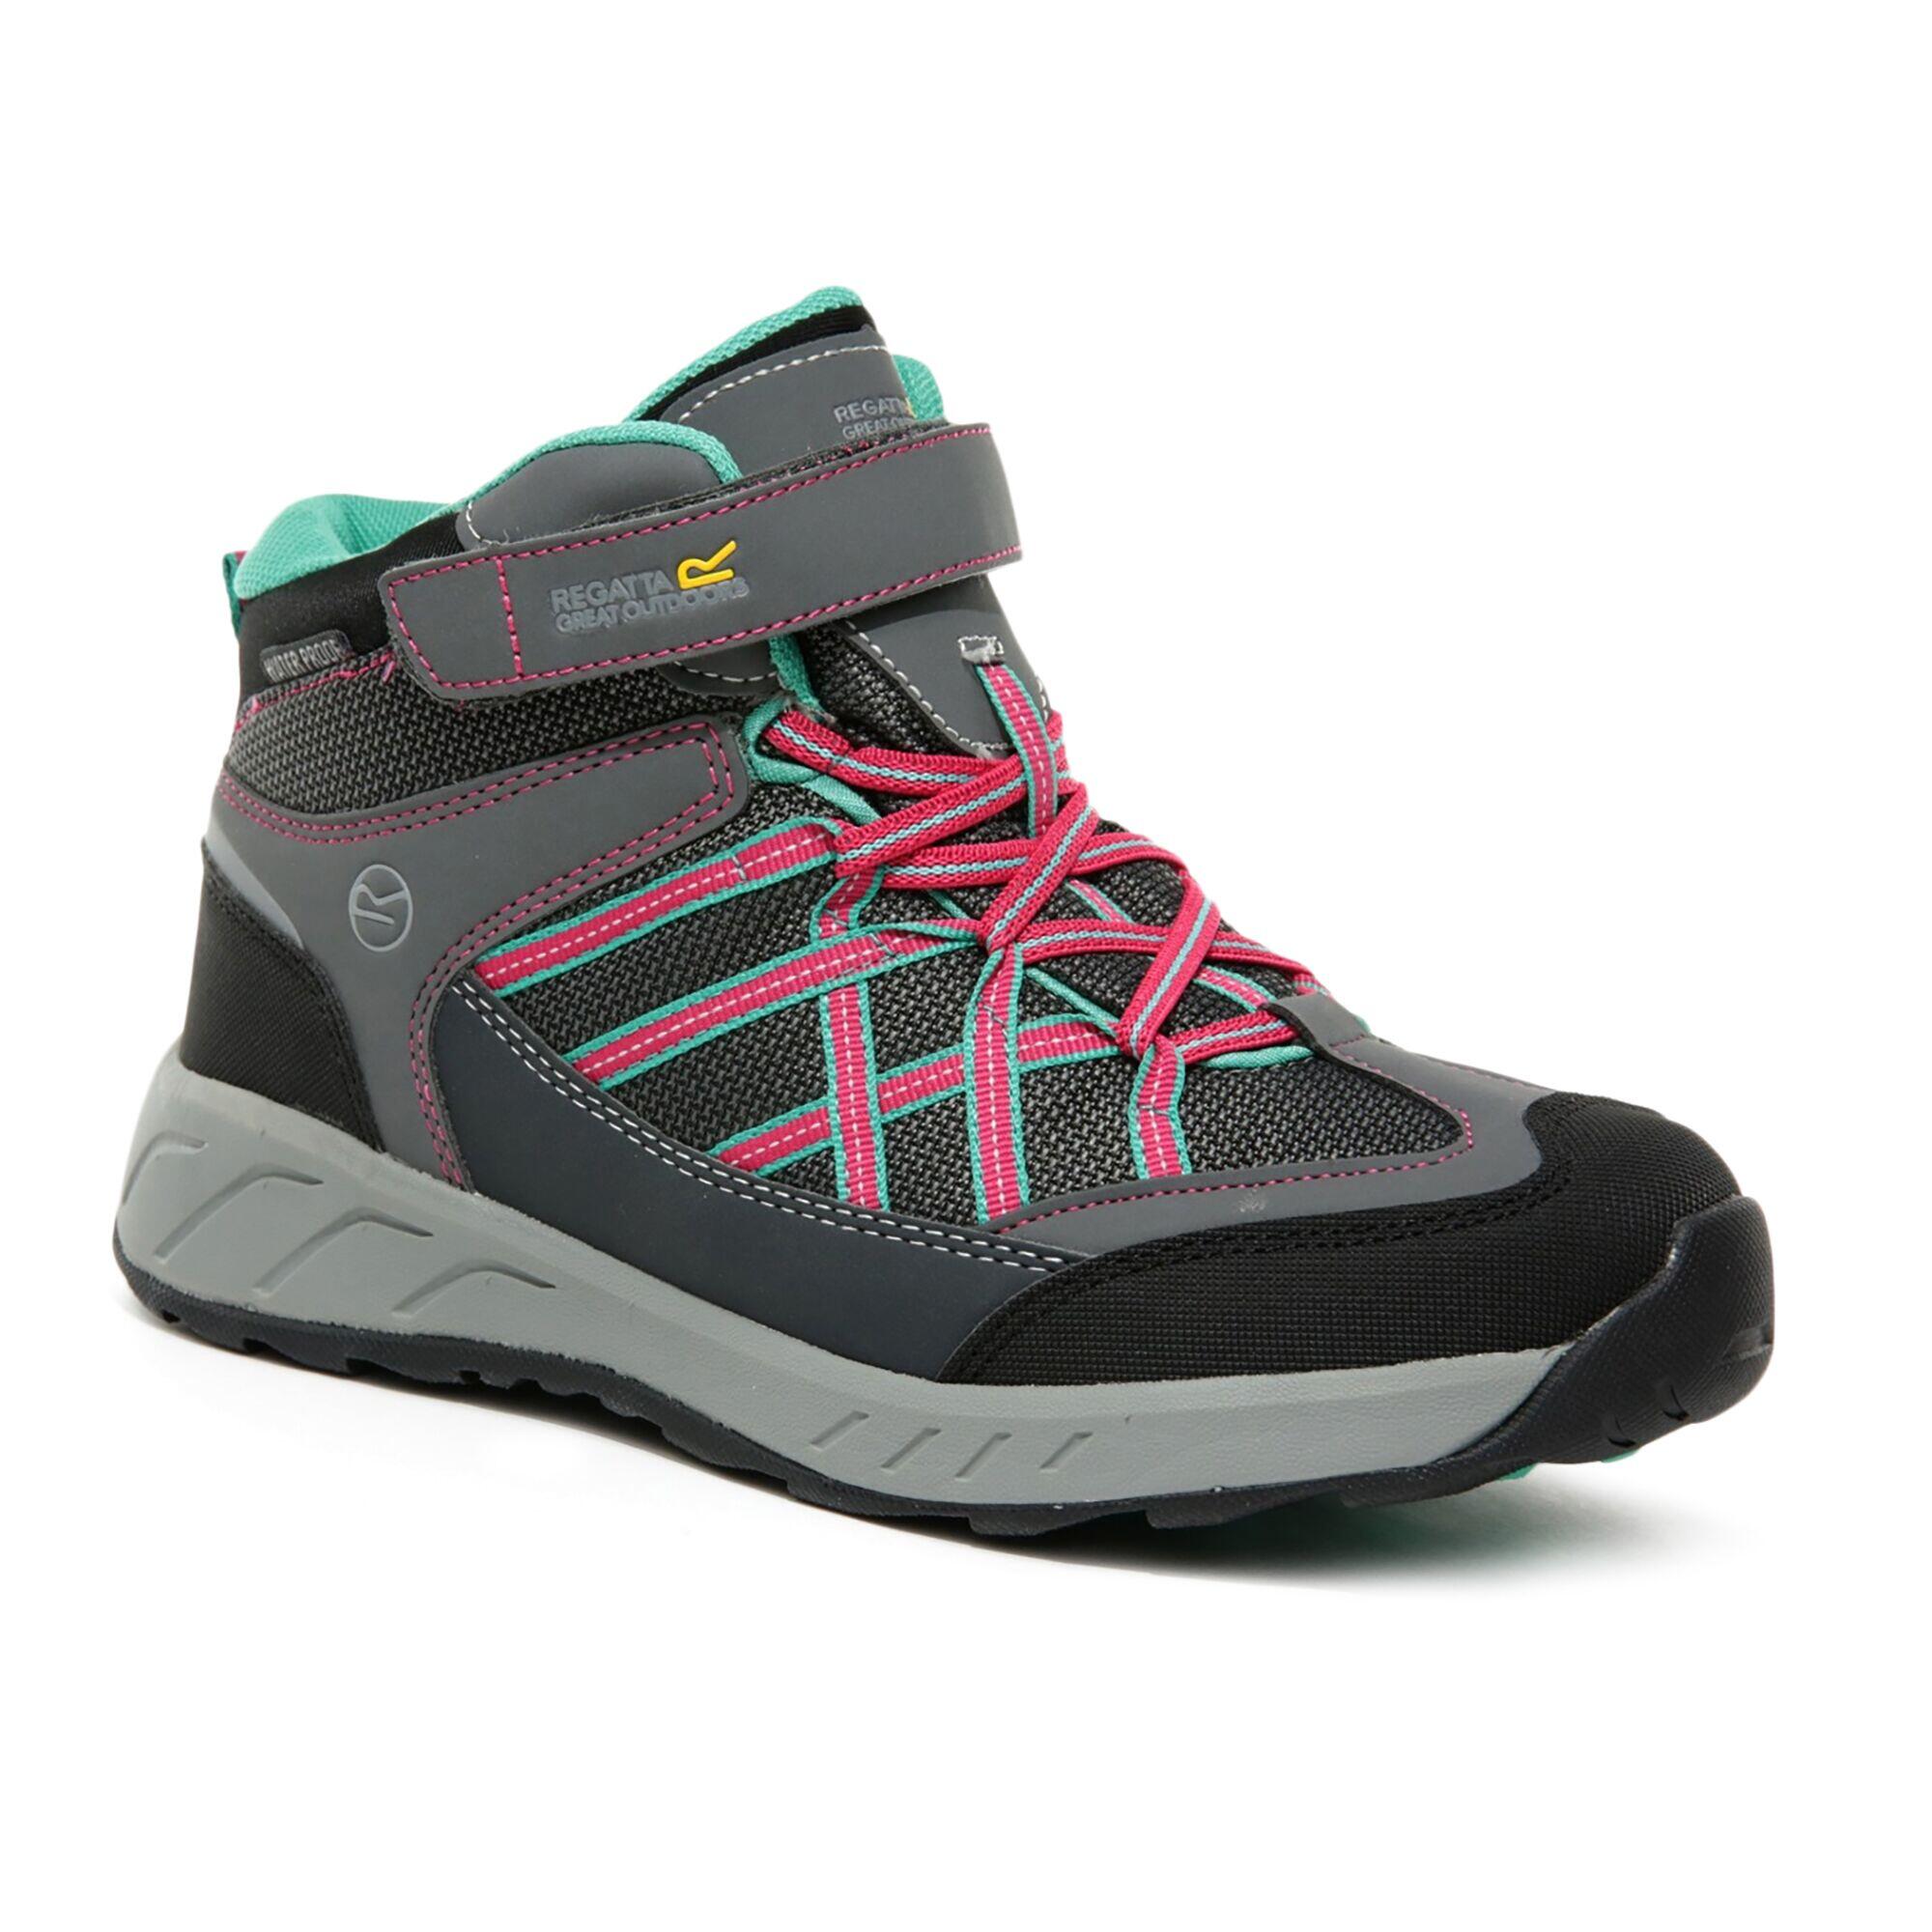 REGATTA Samaris V Kids' Hiking Waterproof Mid Boots - Light Grey/Pink